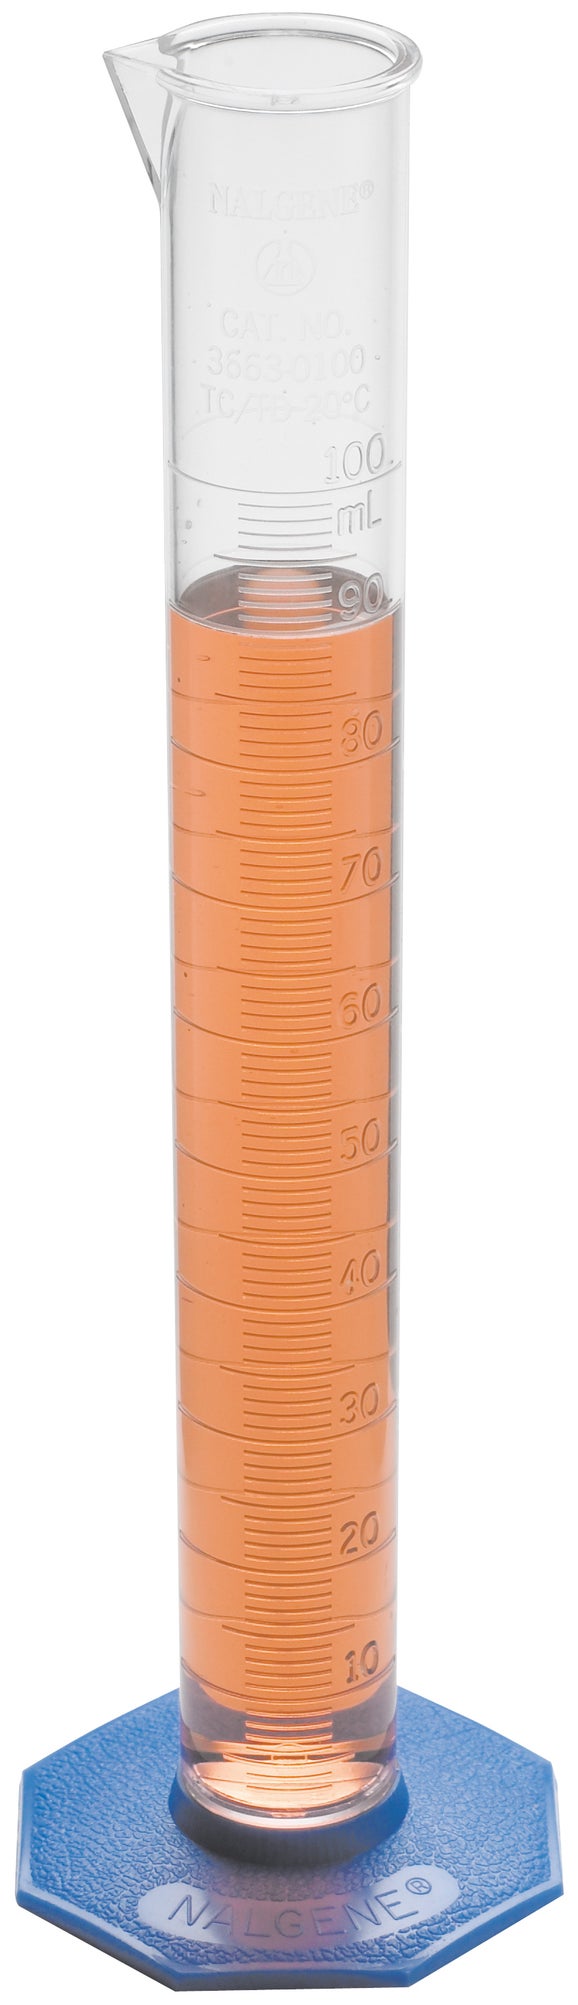 Zylinder, mit Skala, Polymethylpenten, 25 mL ± 0,3 mL, Teilung 0,5 mL